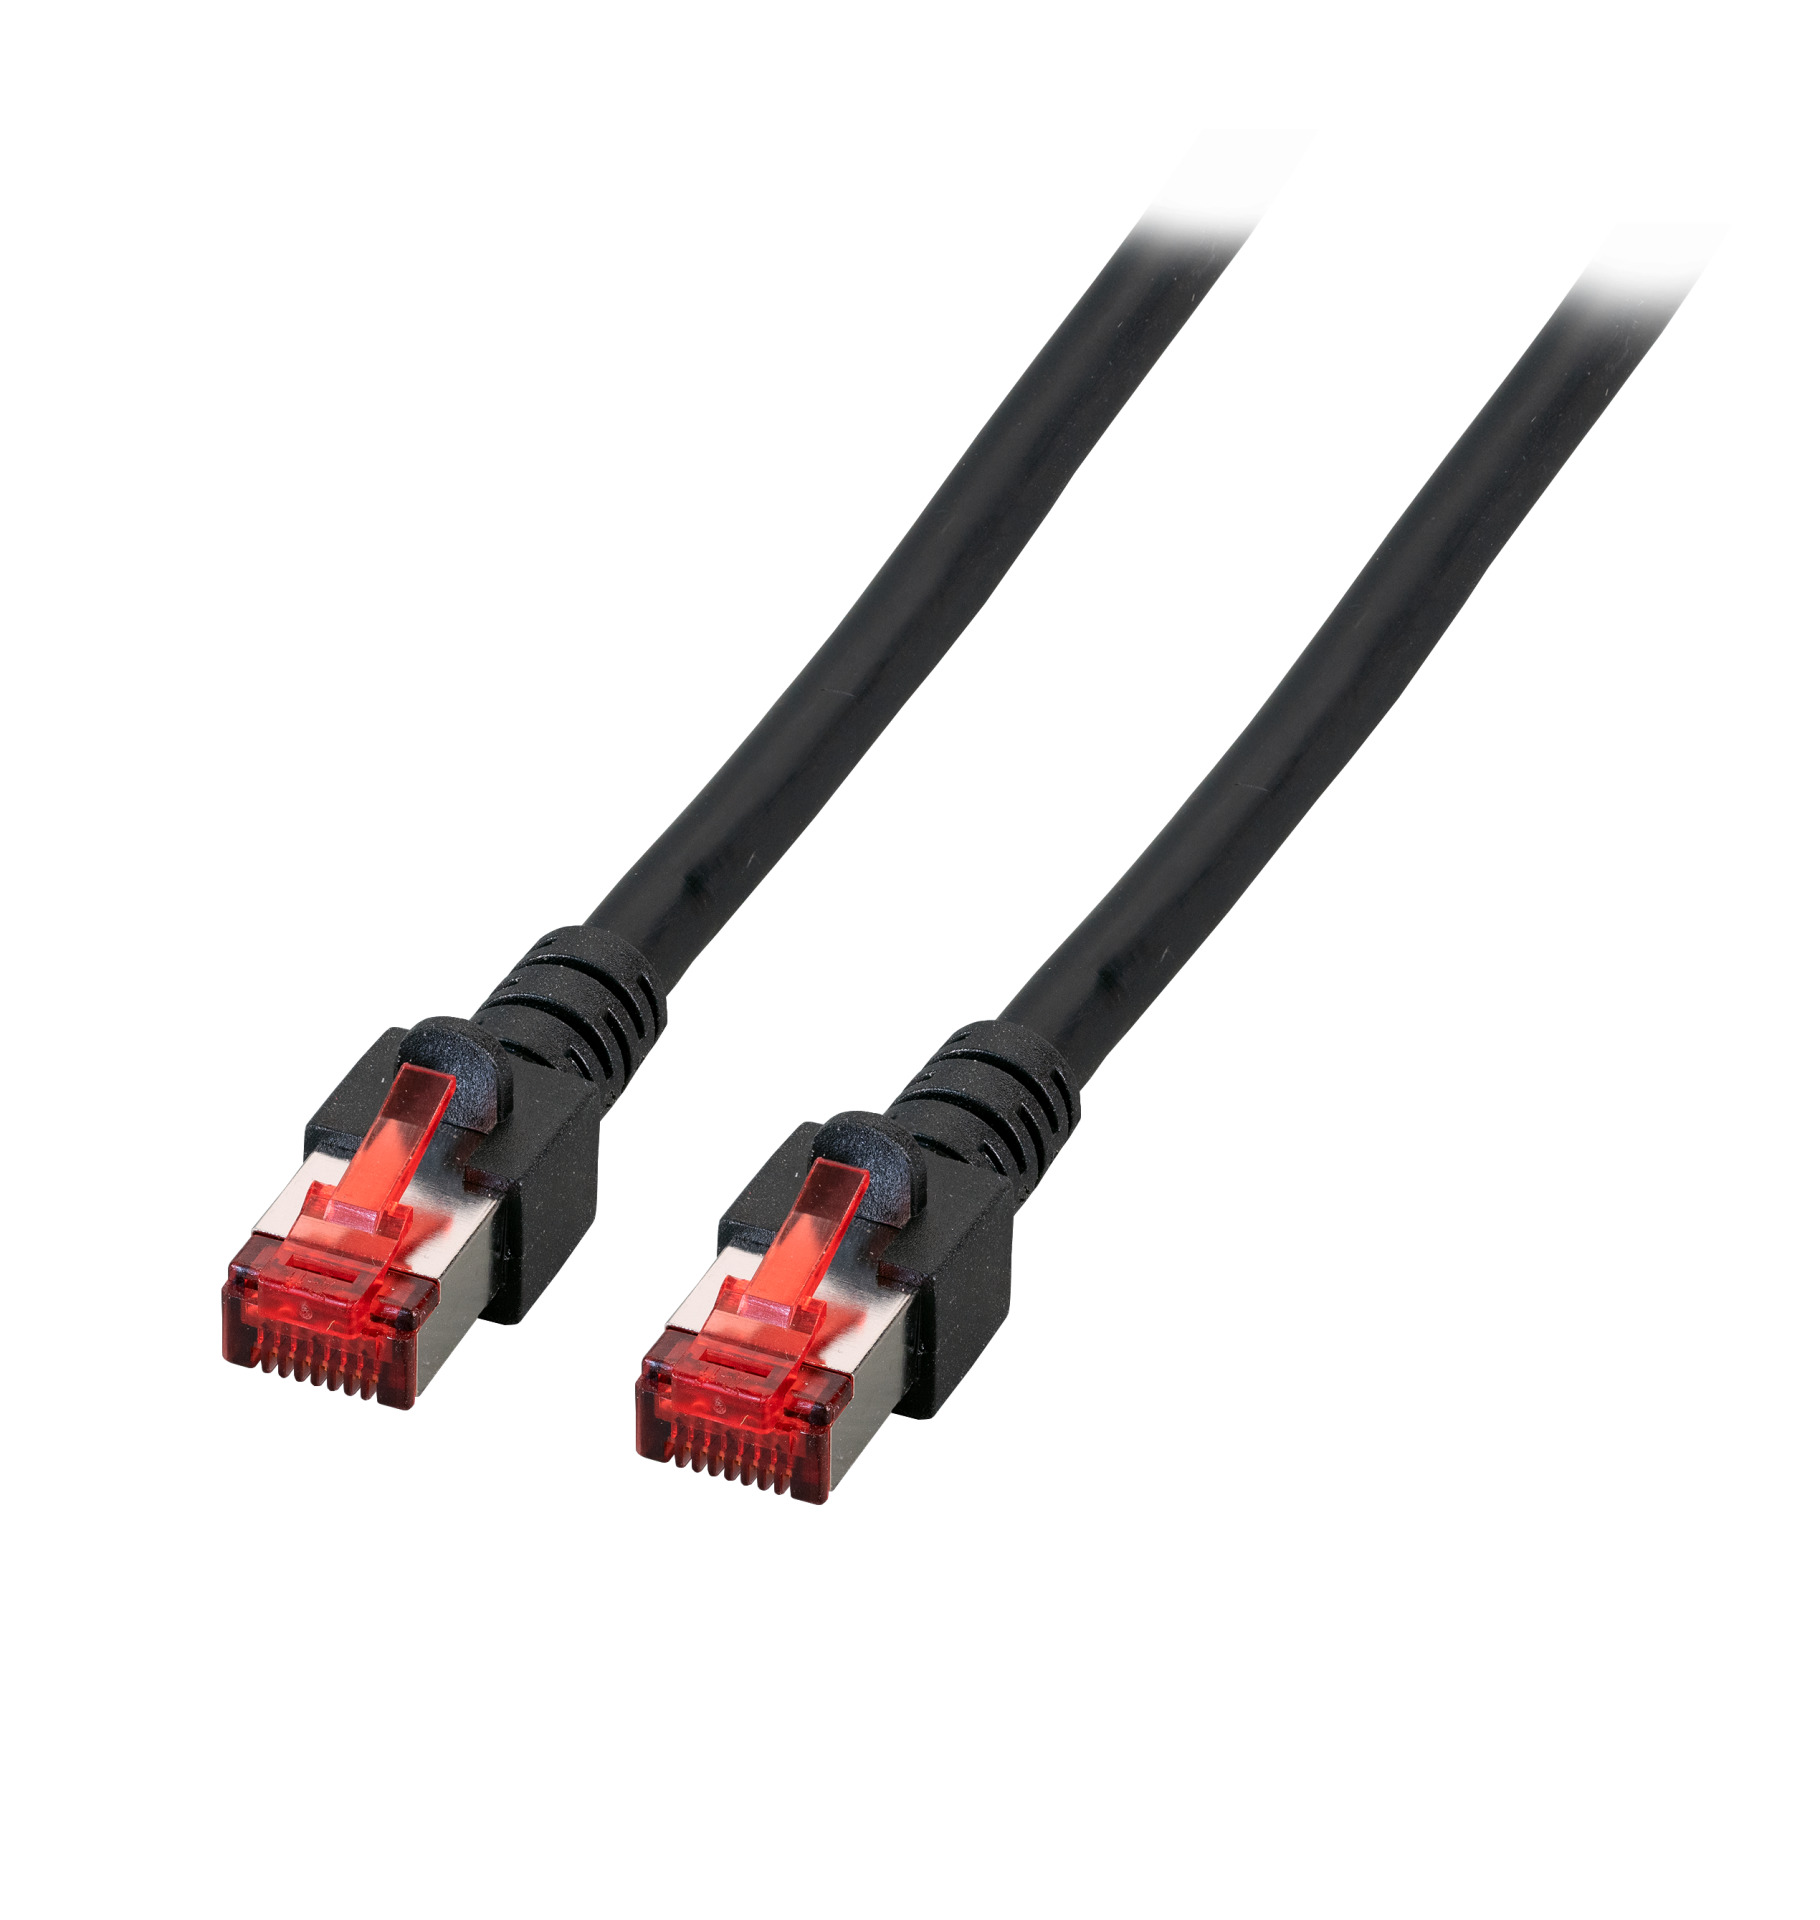 RJ45 Patch cable S/FTP, Cat.6, LSZH, 1m, black